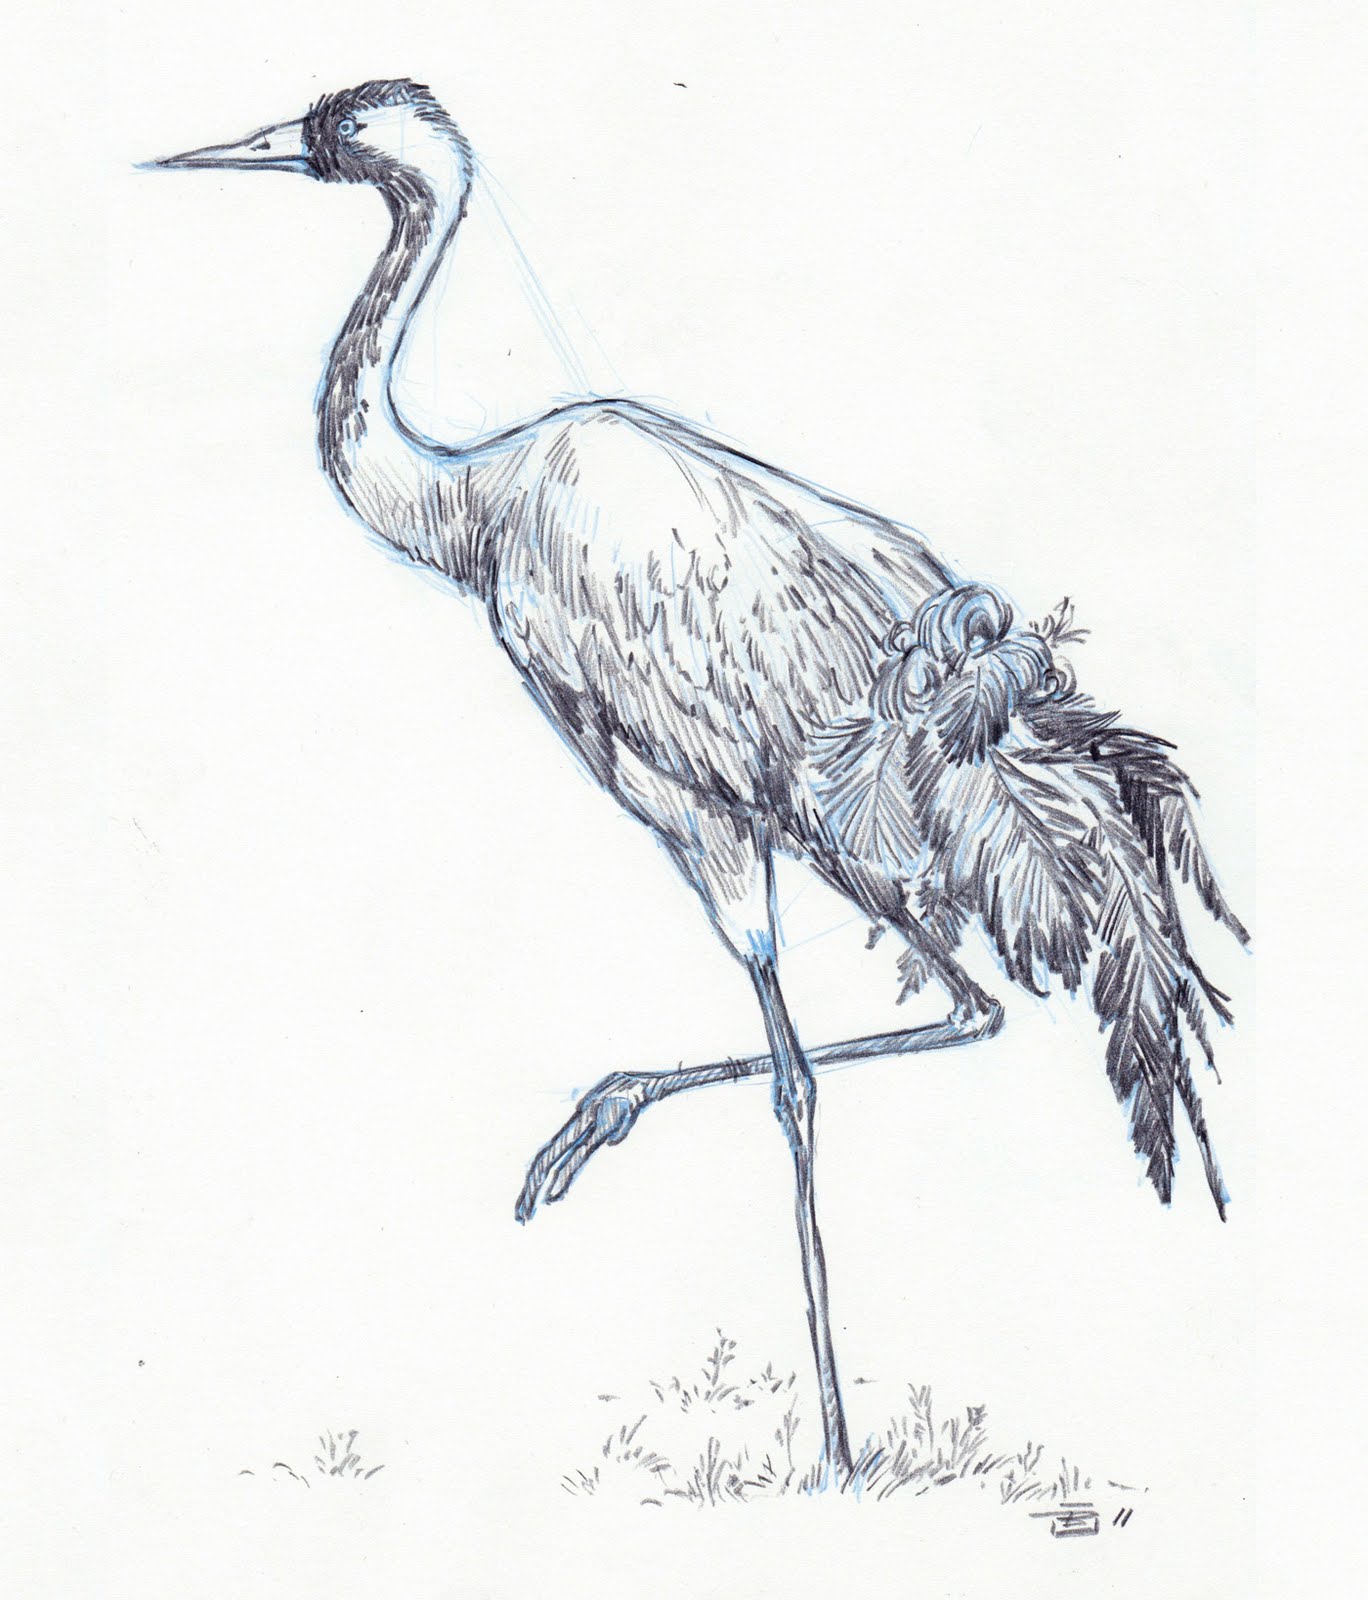 Crane Bird Sketch at Explore collection of Crane